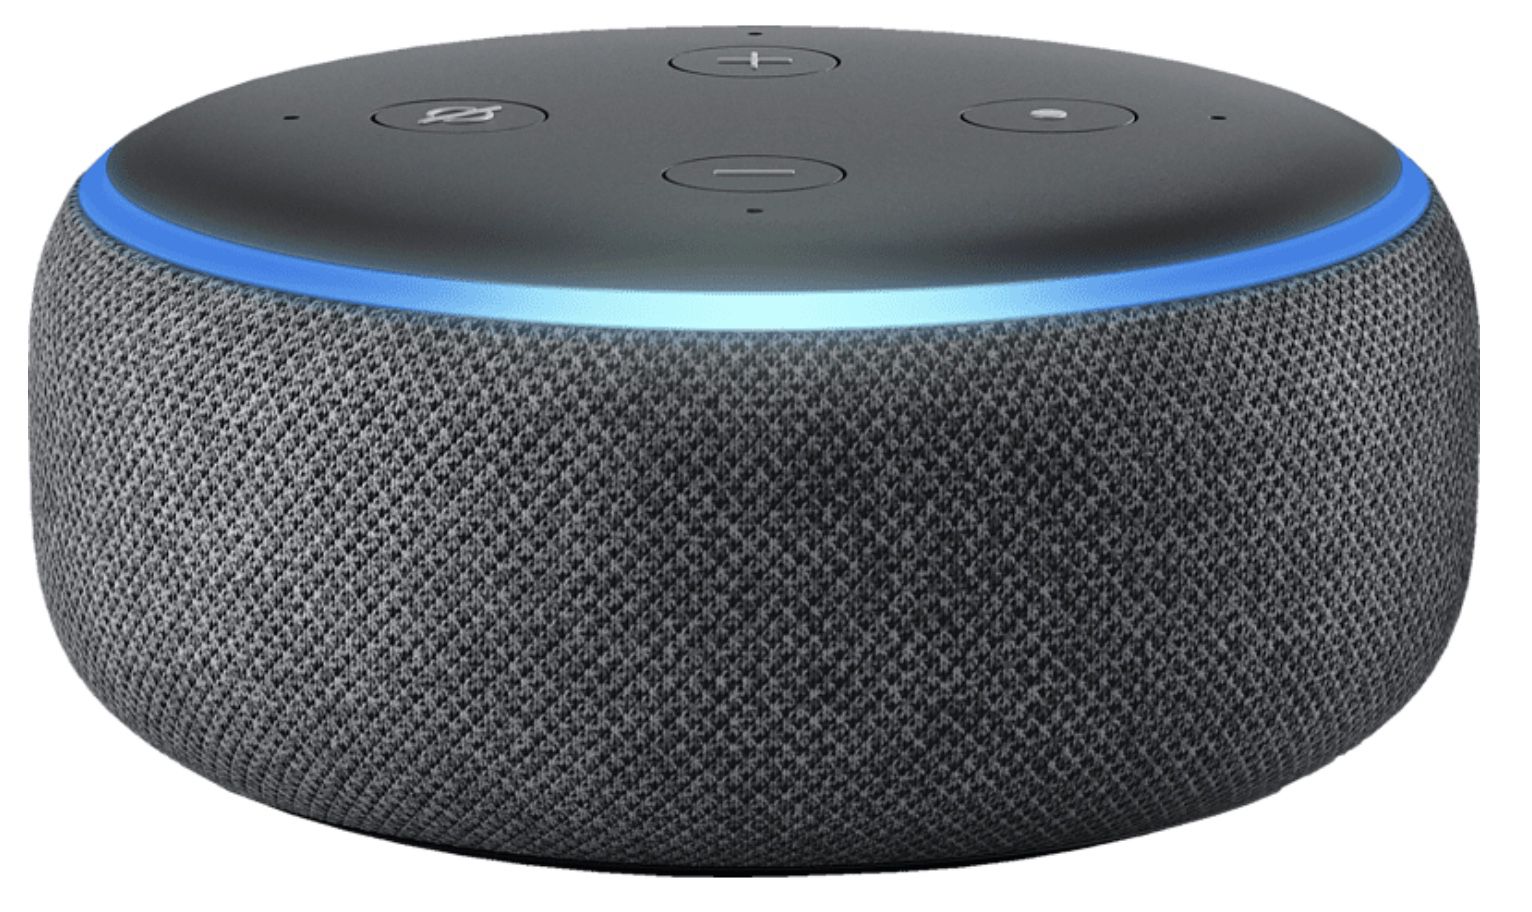 MediaMarkt: Amazon Echo Dot Angebote   z.B. Echo Dot 4. Generation mit Uhr ab 29,99€ (statt 40€)